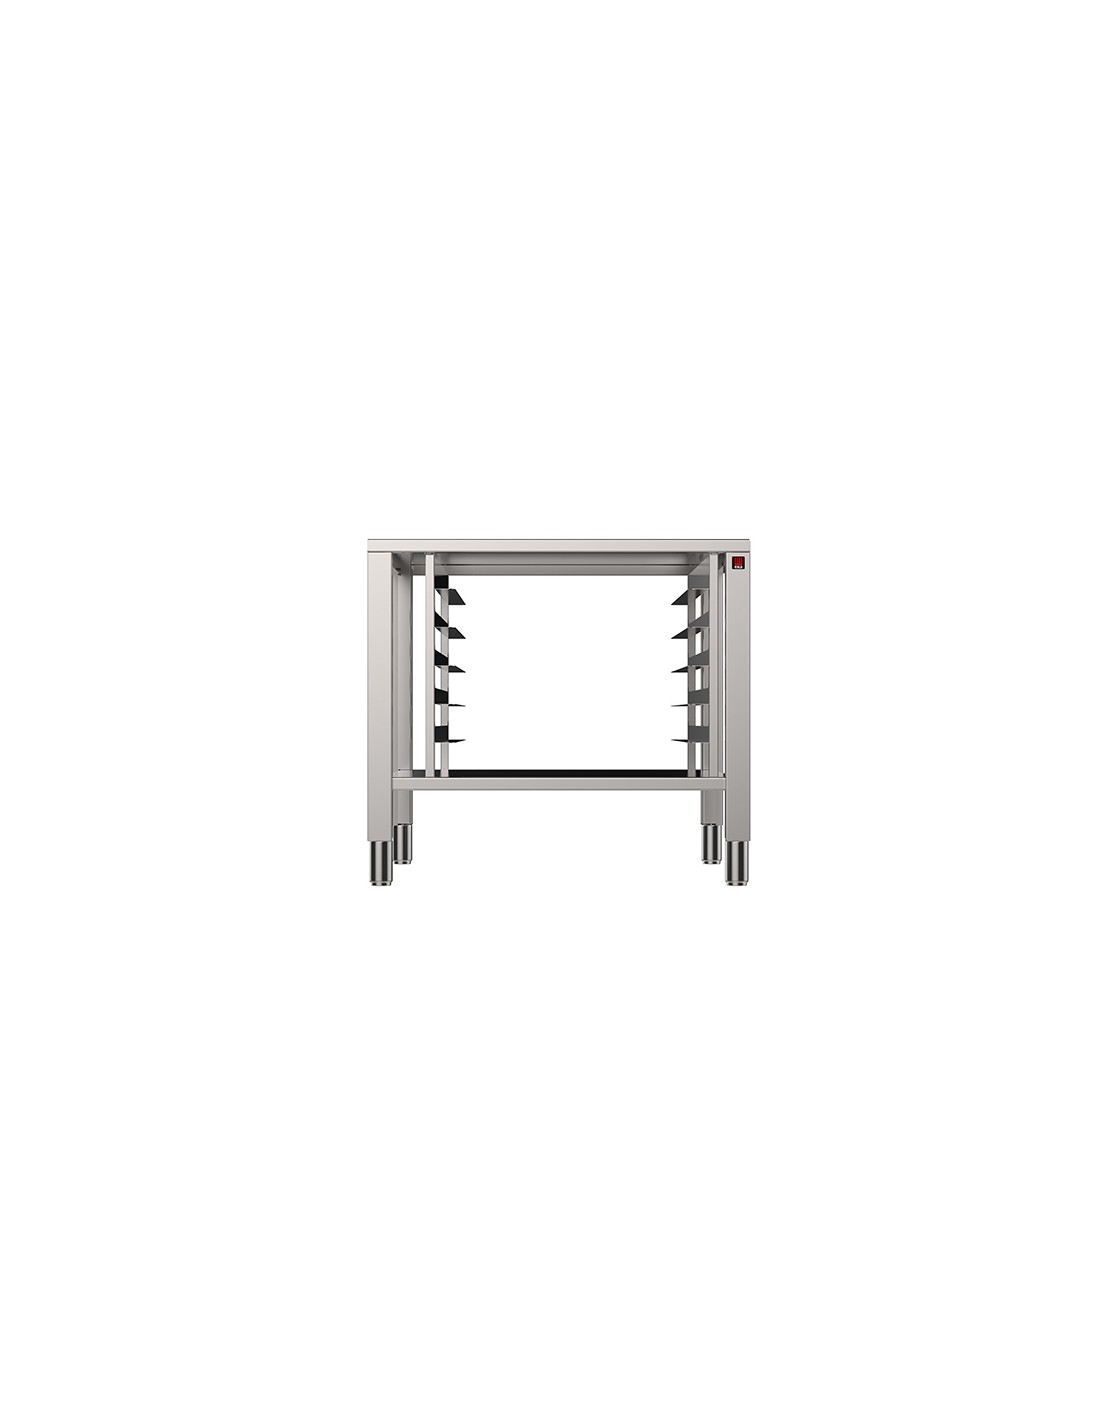 Tavolo fisso - Acciaio inox AISI 430 - Supporti per forni 4-6-10 teglie - Dimensioni cm85x 78.7 x 77h